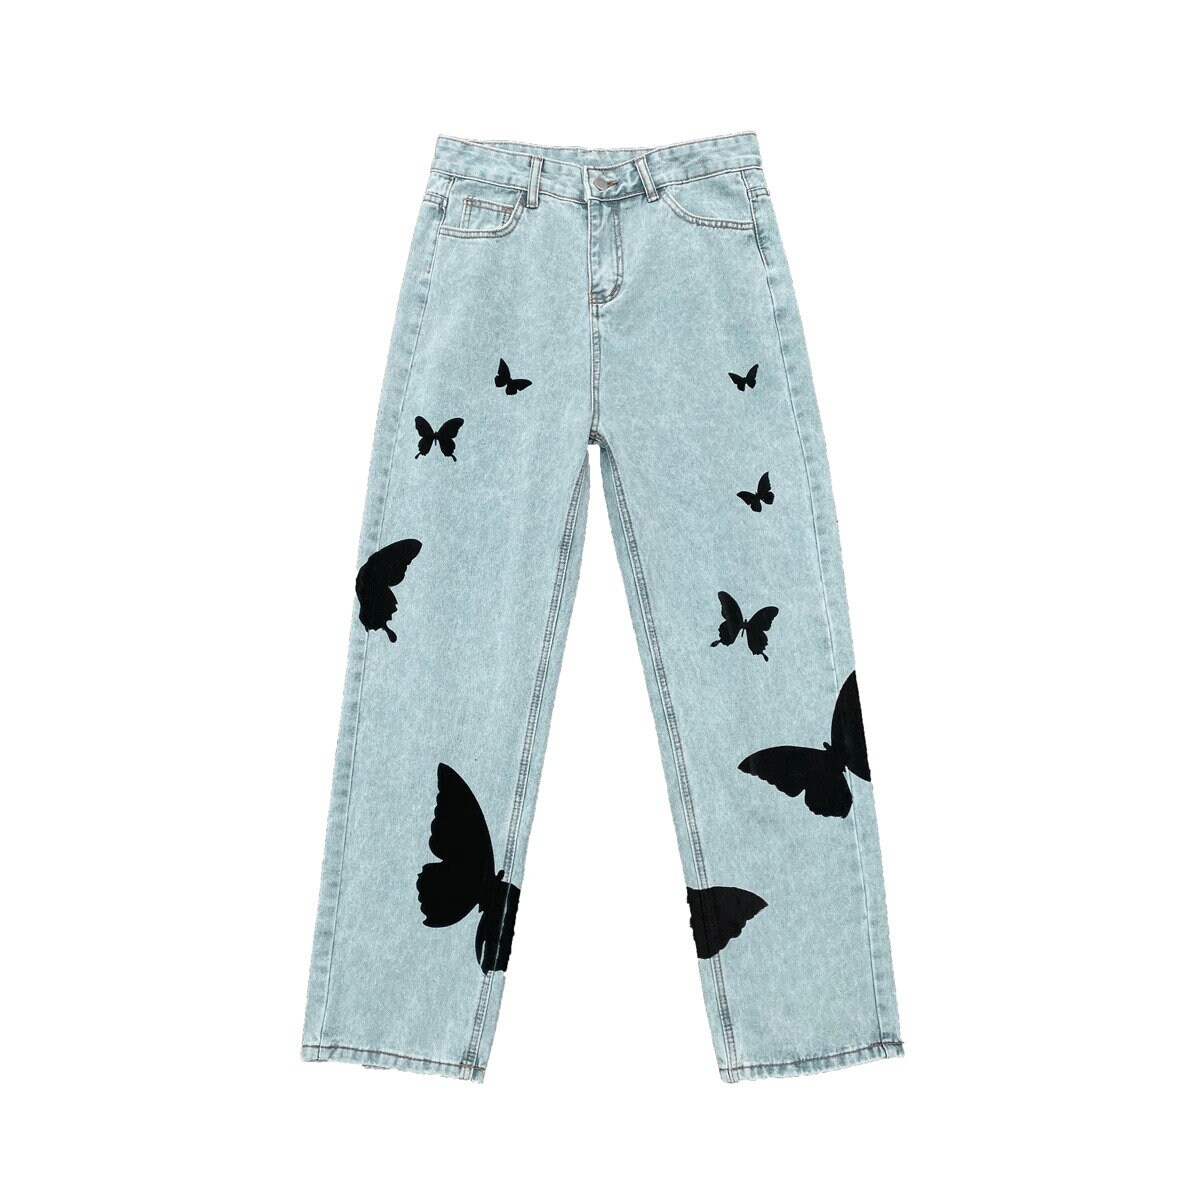 Butterfly Jeans